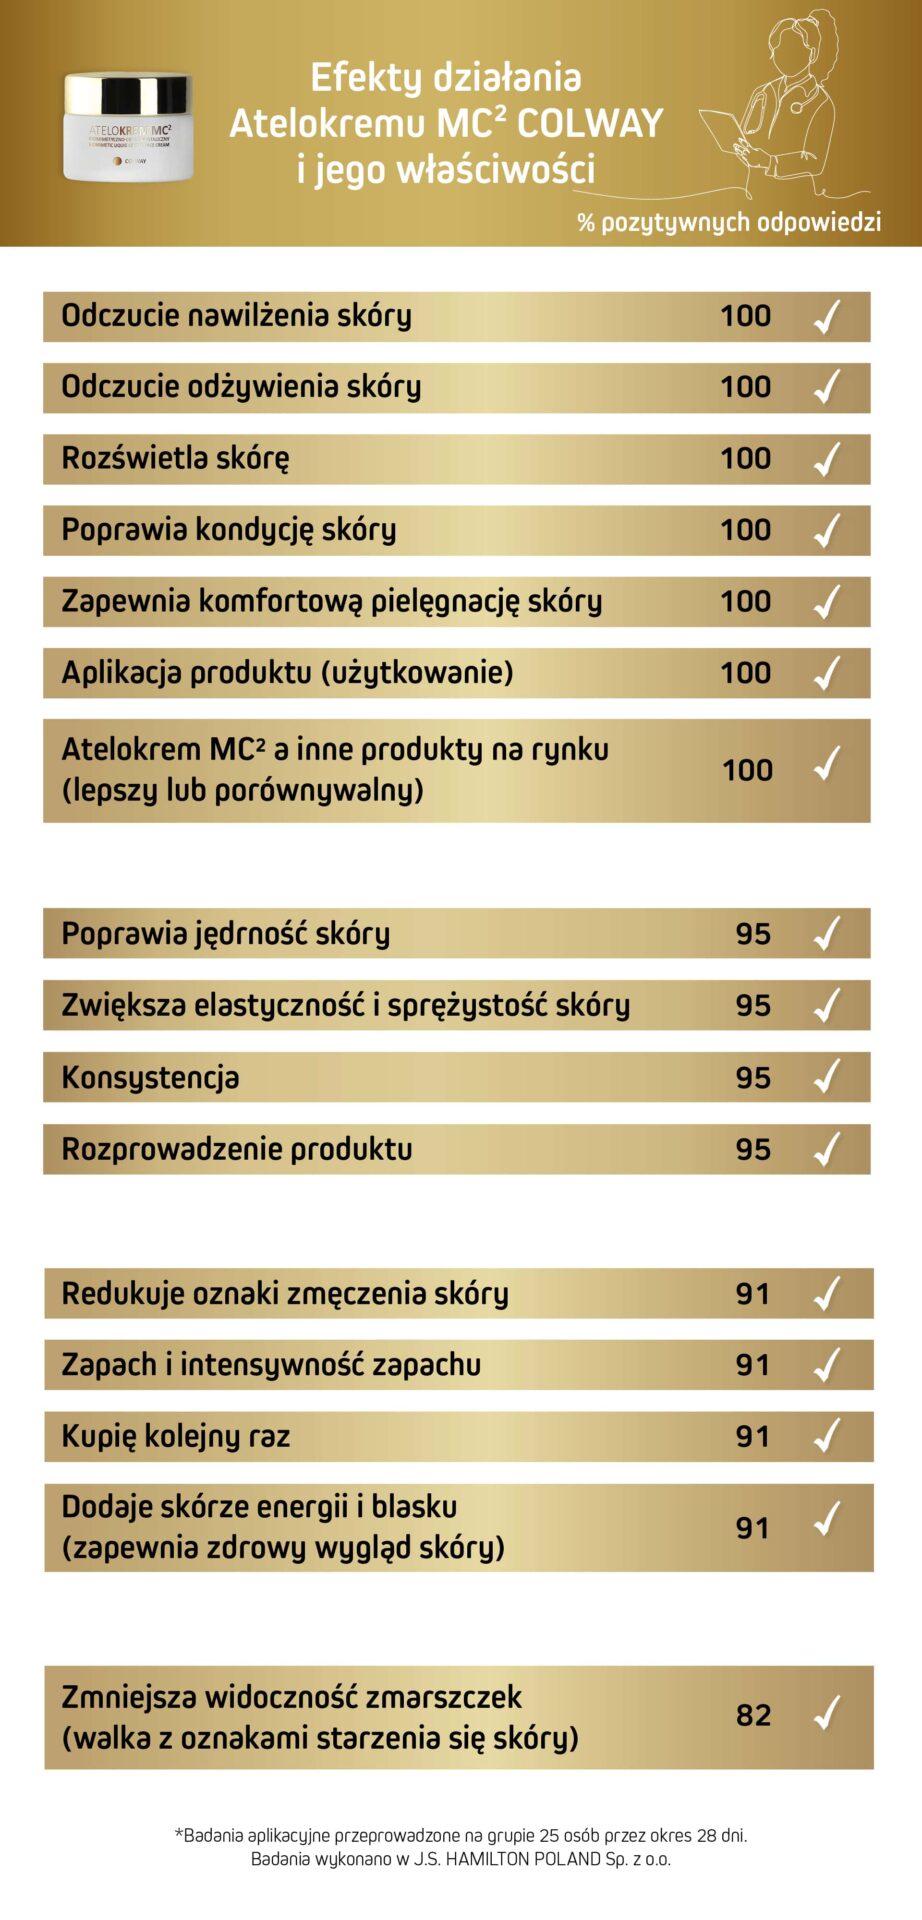 tabela z wynikami badań atelokremu mc2